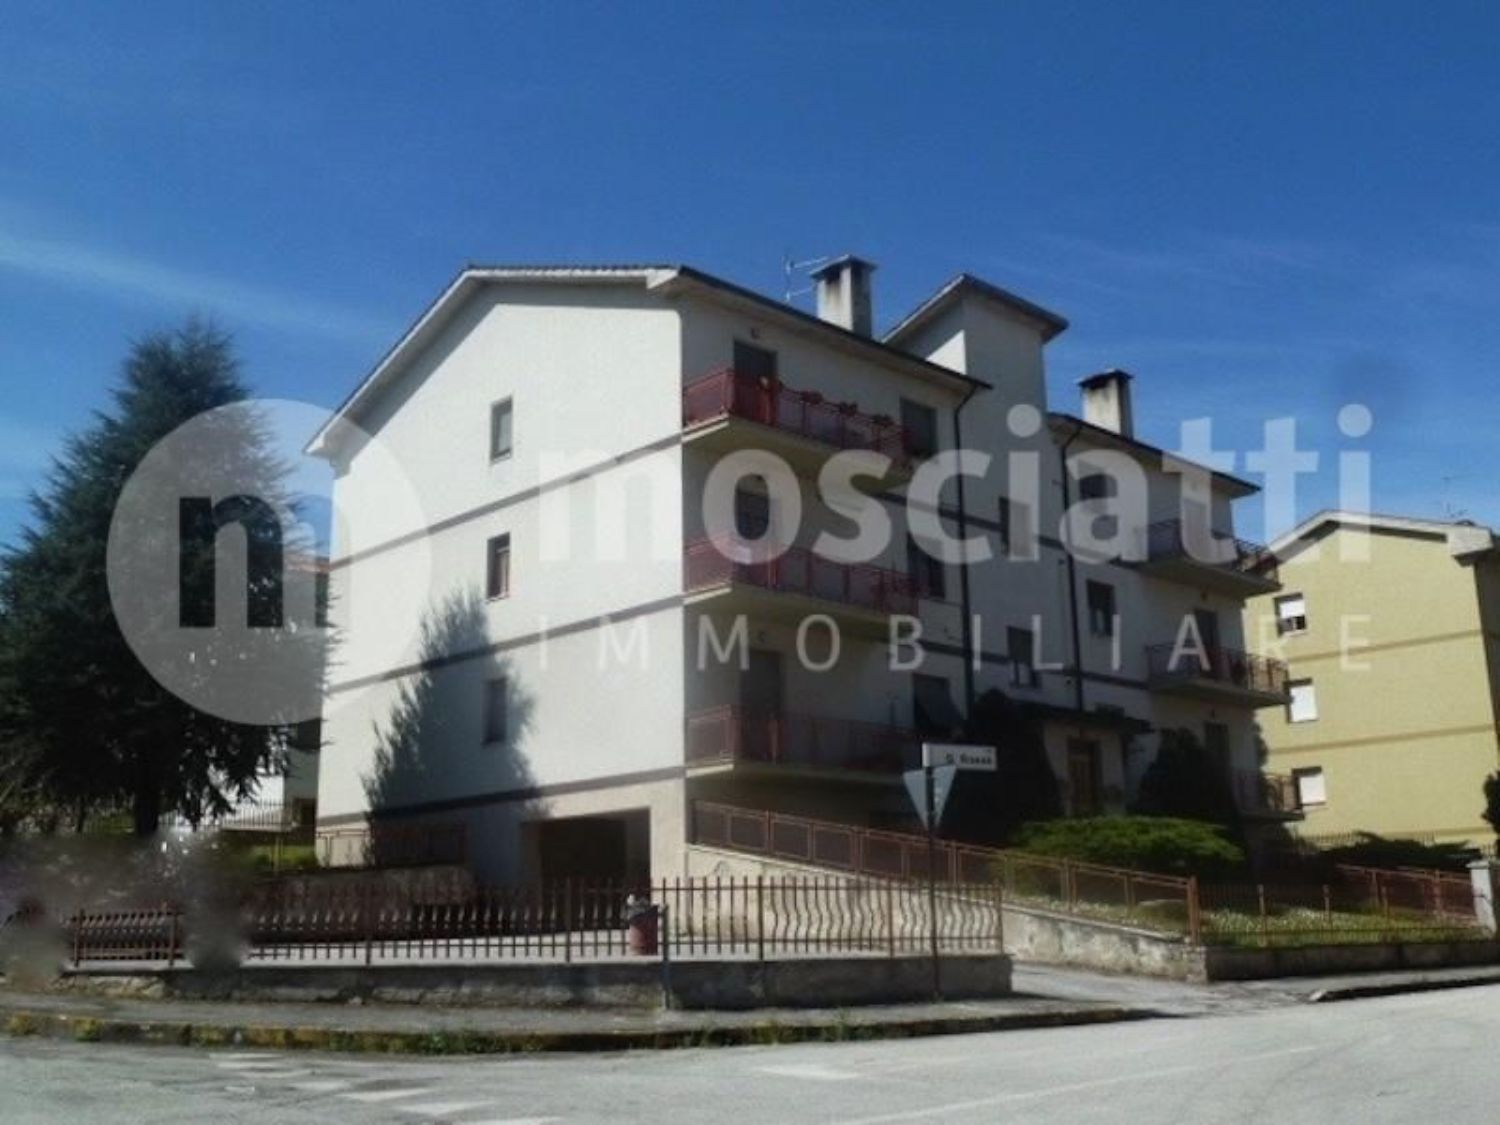 Appartamento in vendita a Esanatoglia, 5 locali, prezzo € 130.000 | PortaleAgenzieImmobiliari.it